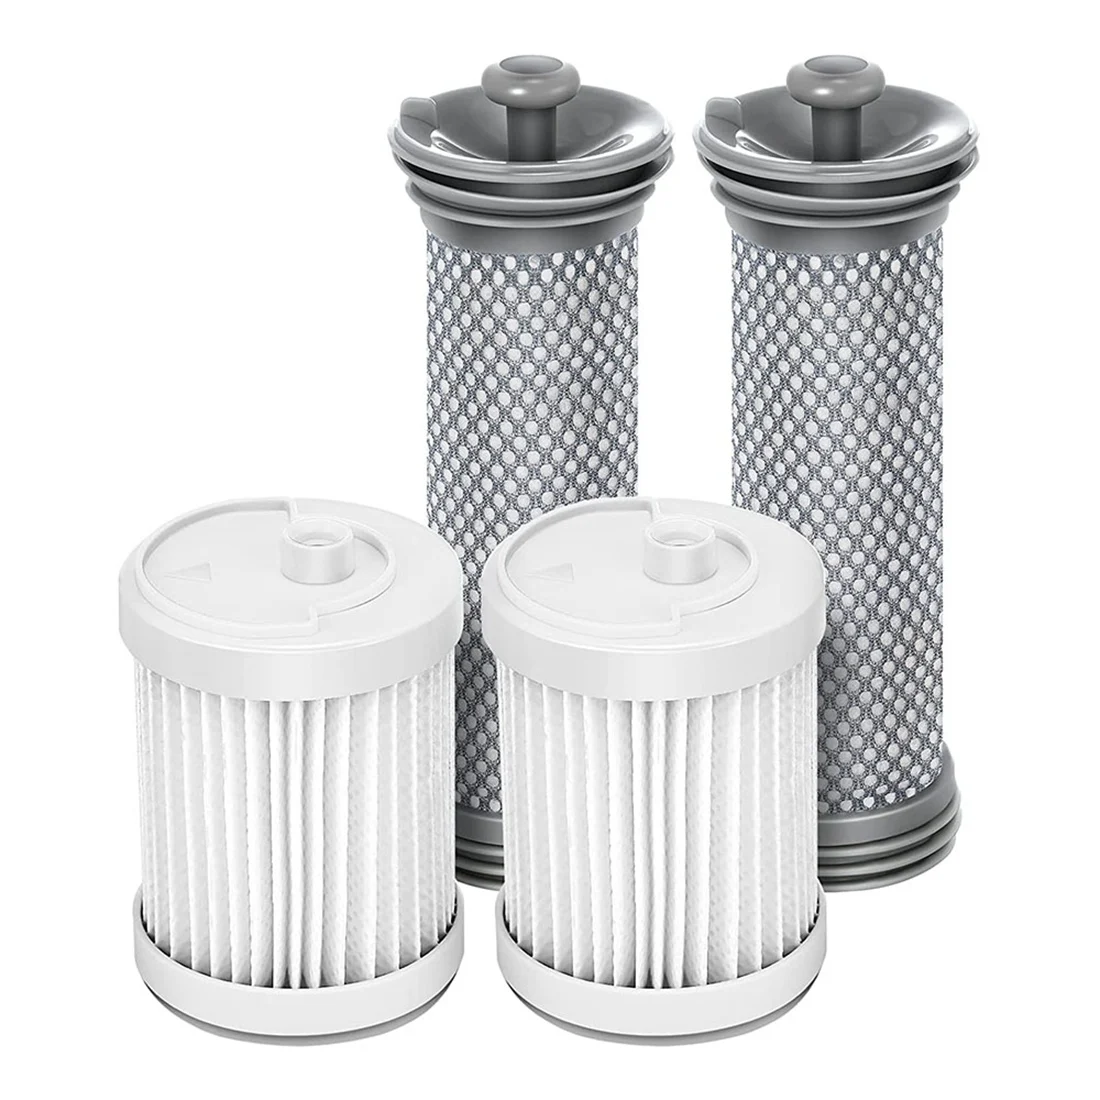 

Комплект сменных фильтров, 1 комплект, совместимых с беспроводными пылесосами Tineco A10/A11 Hero, A10/A11, предварительными фильтрами и HEPA-фильтром